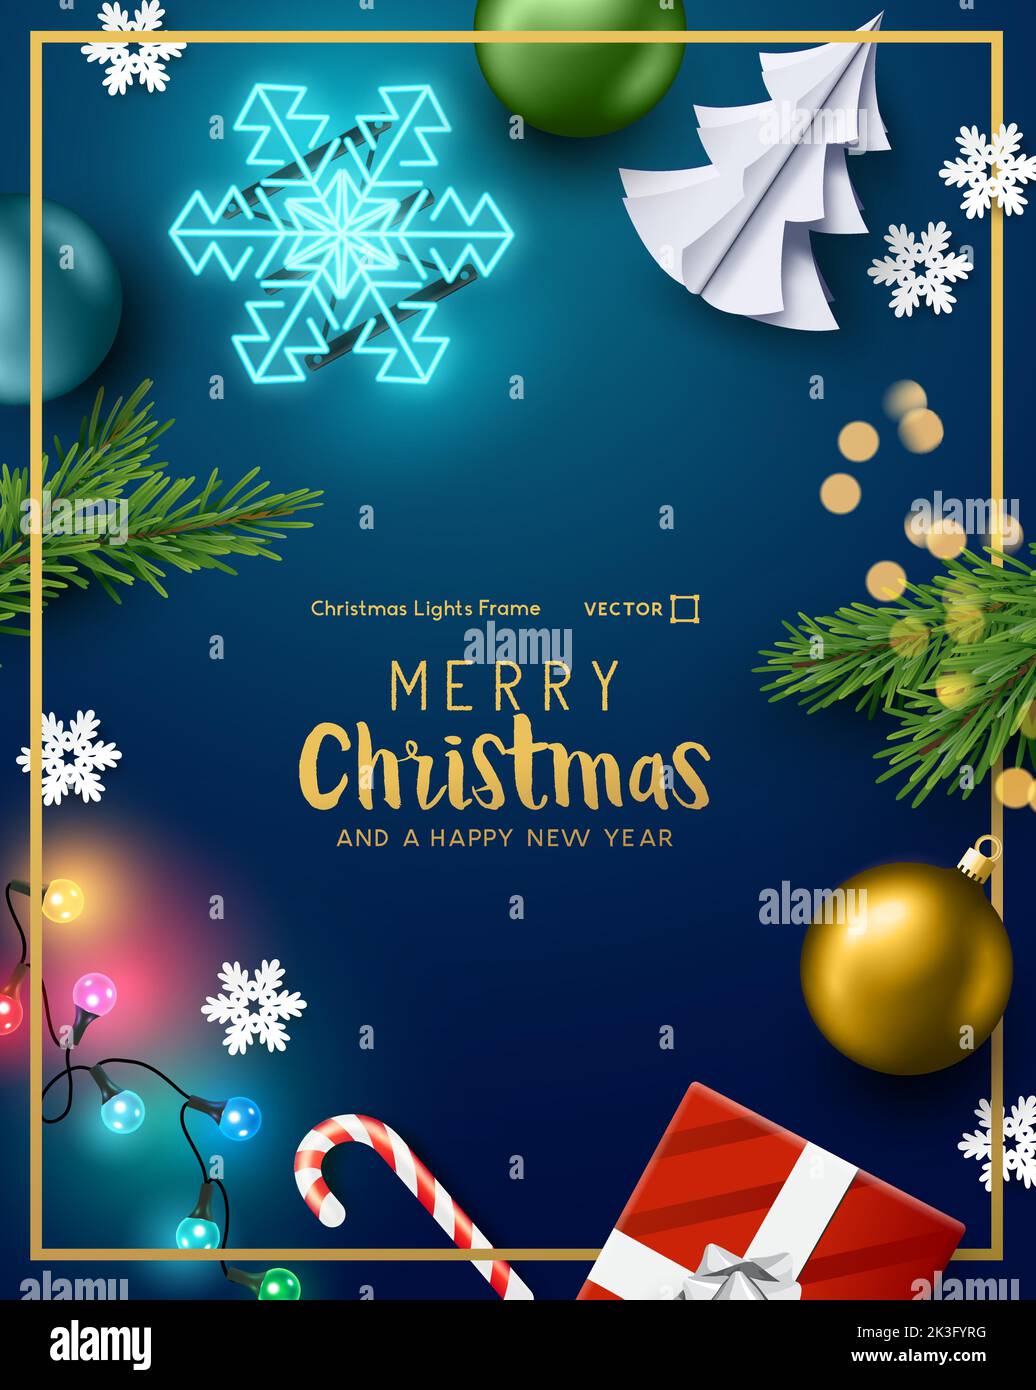 Weihnachtsschmuck Hintergrund Rahmen mit festlichen Lichtern! Vektorgrafik. Stock Vektor